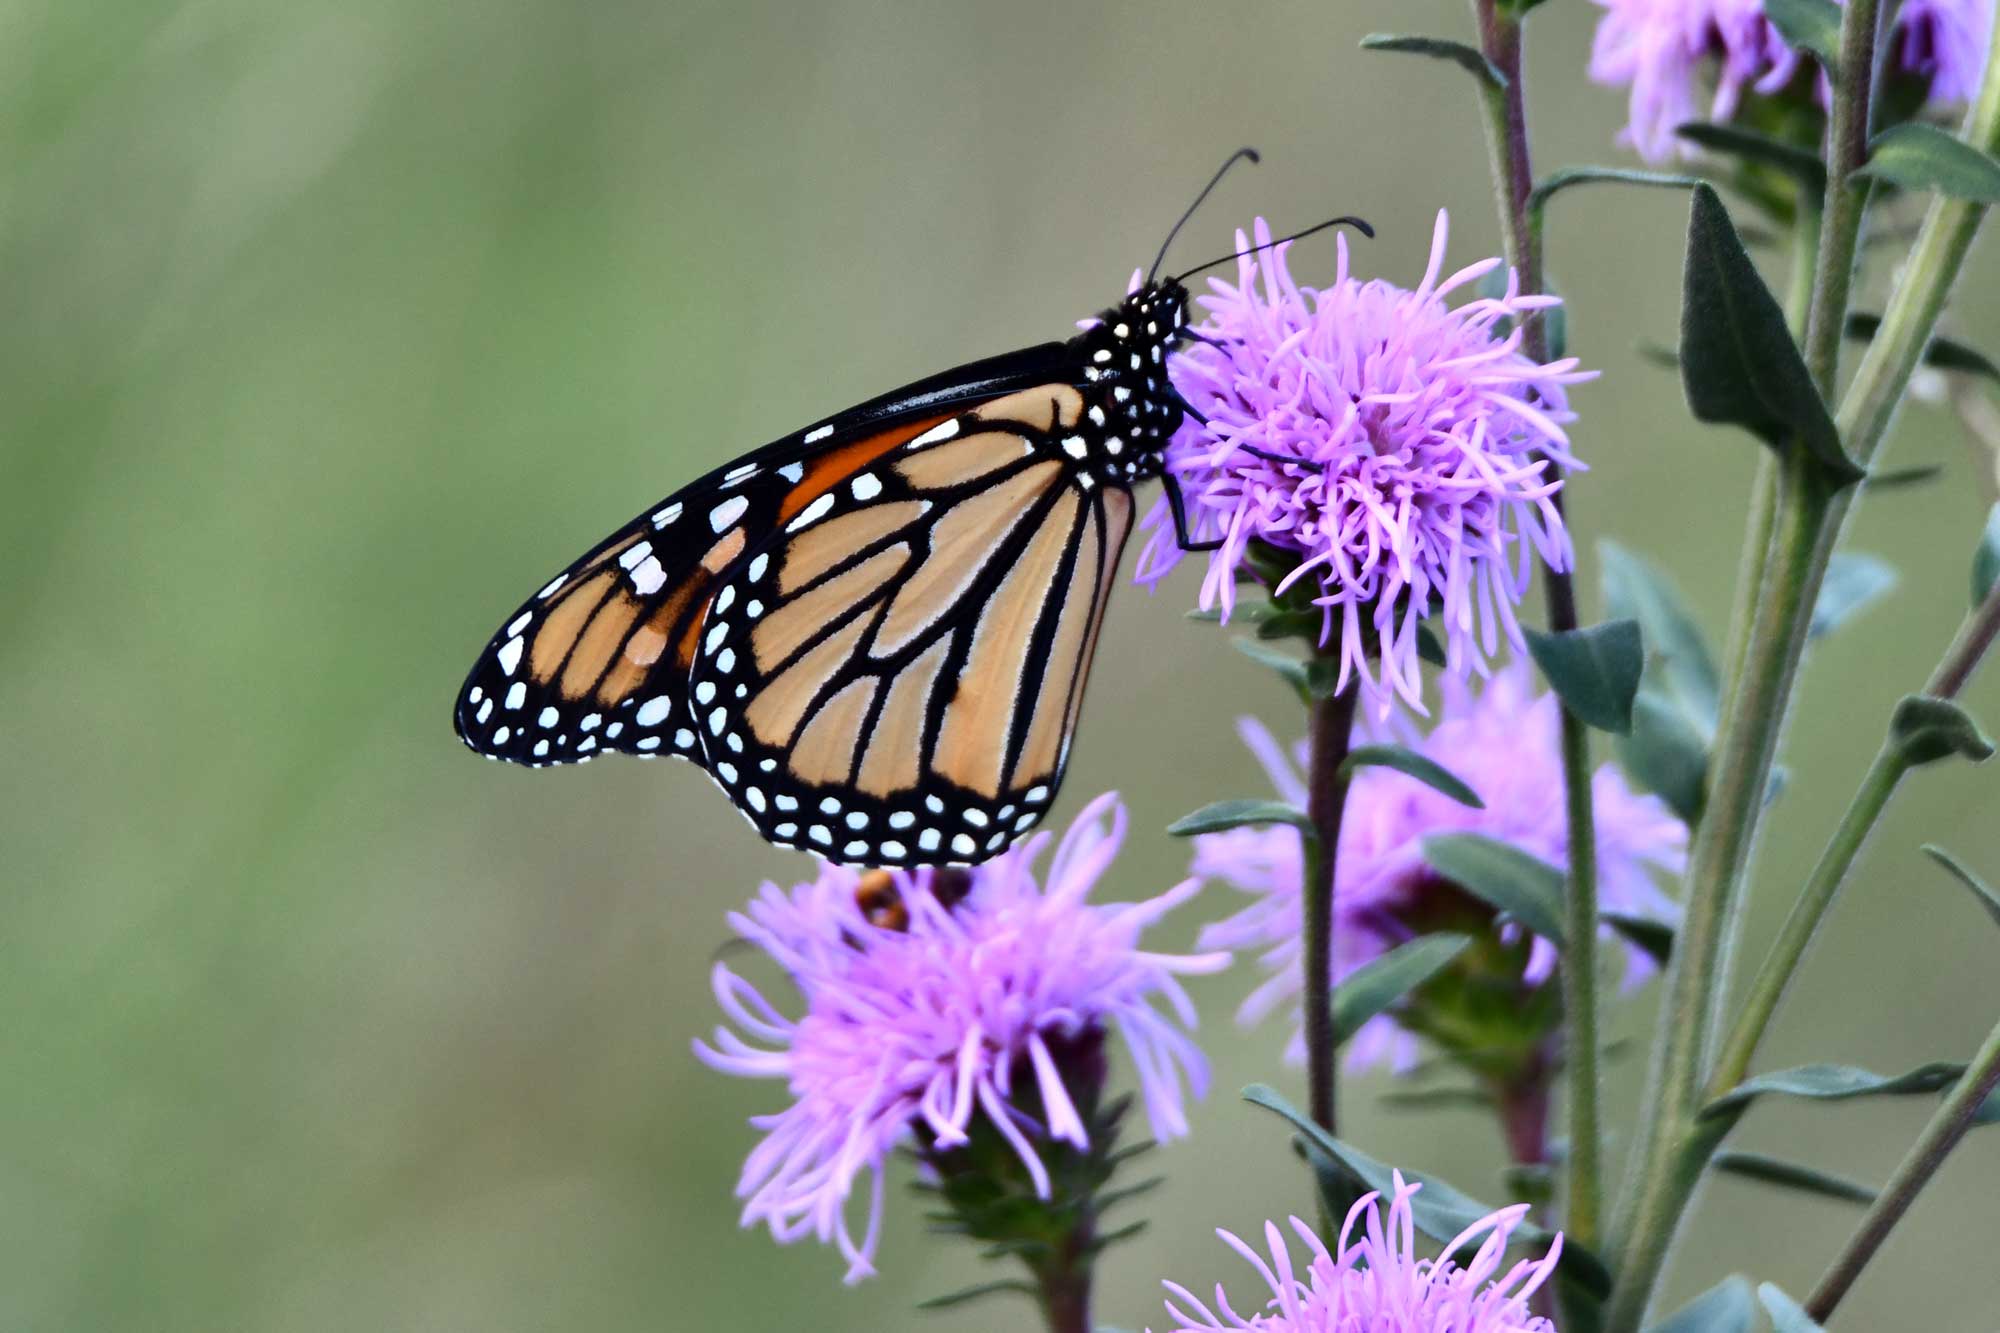 A monarch butterfly rest on the purple flowers of wild bergamot.